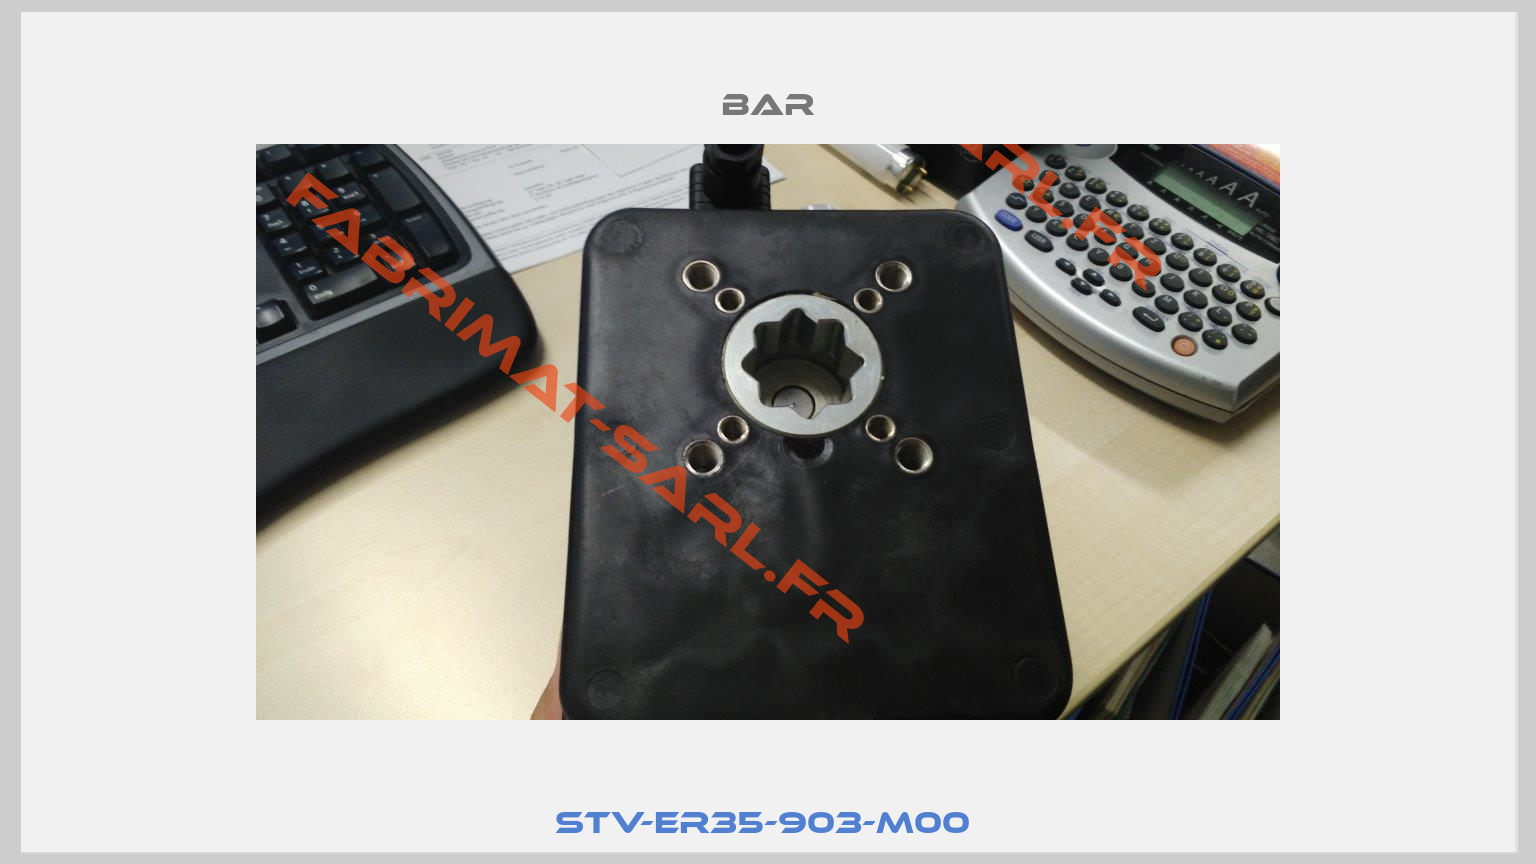 STV-ER35-903-M00 -4